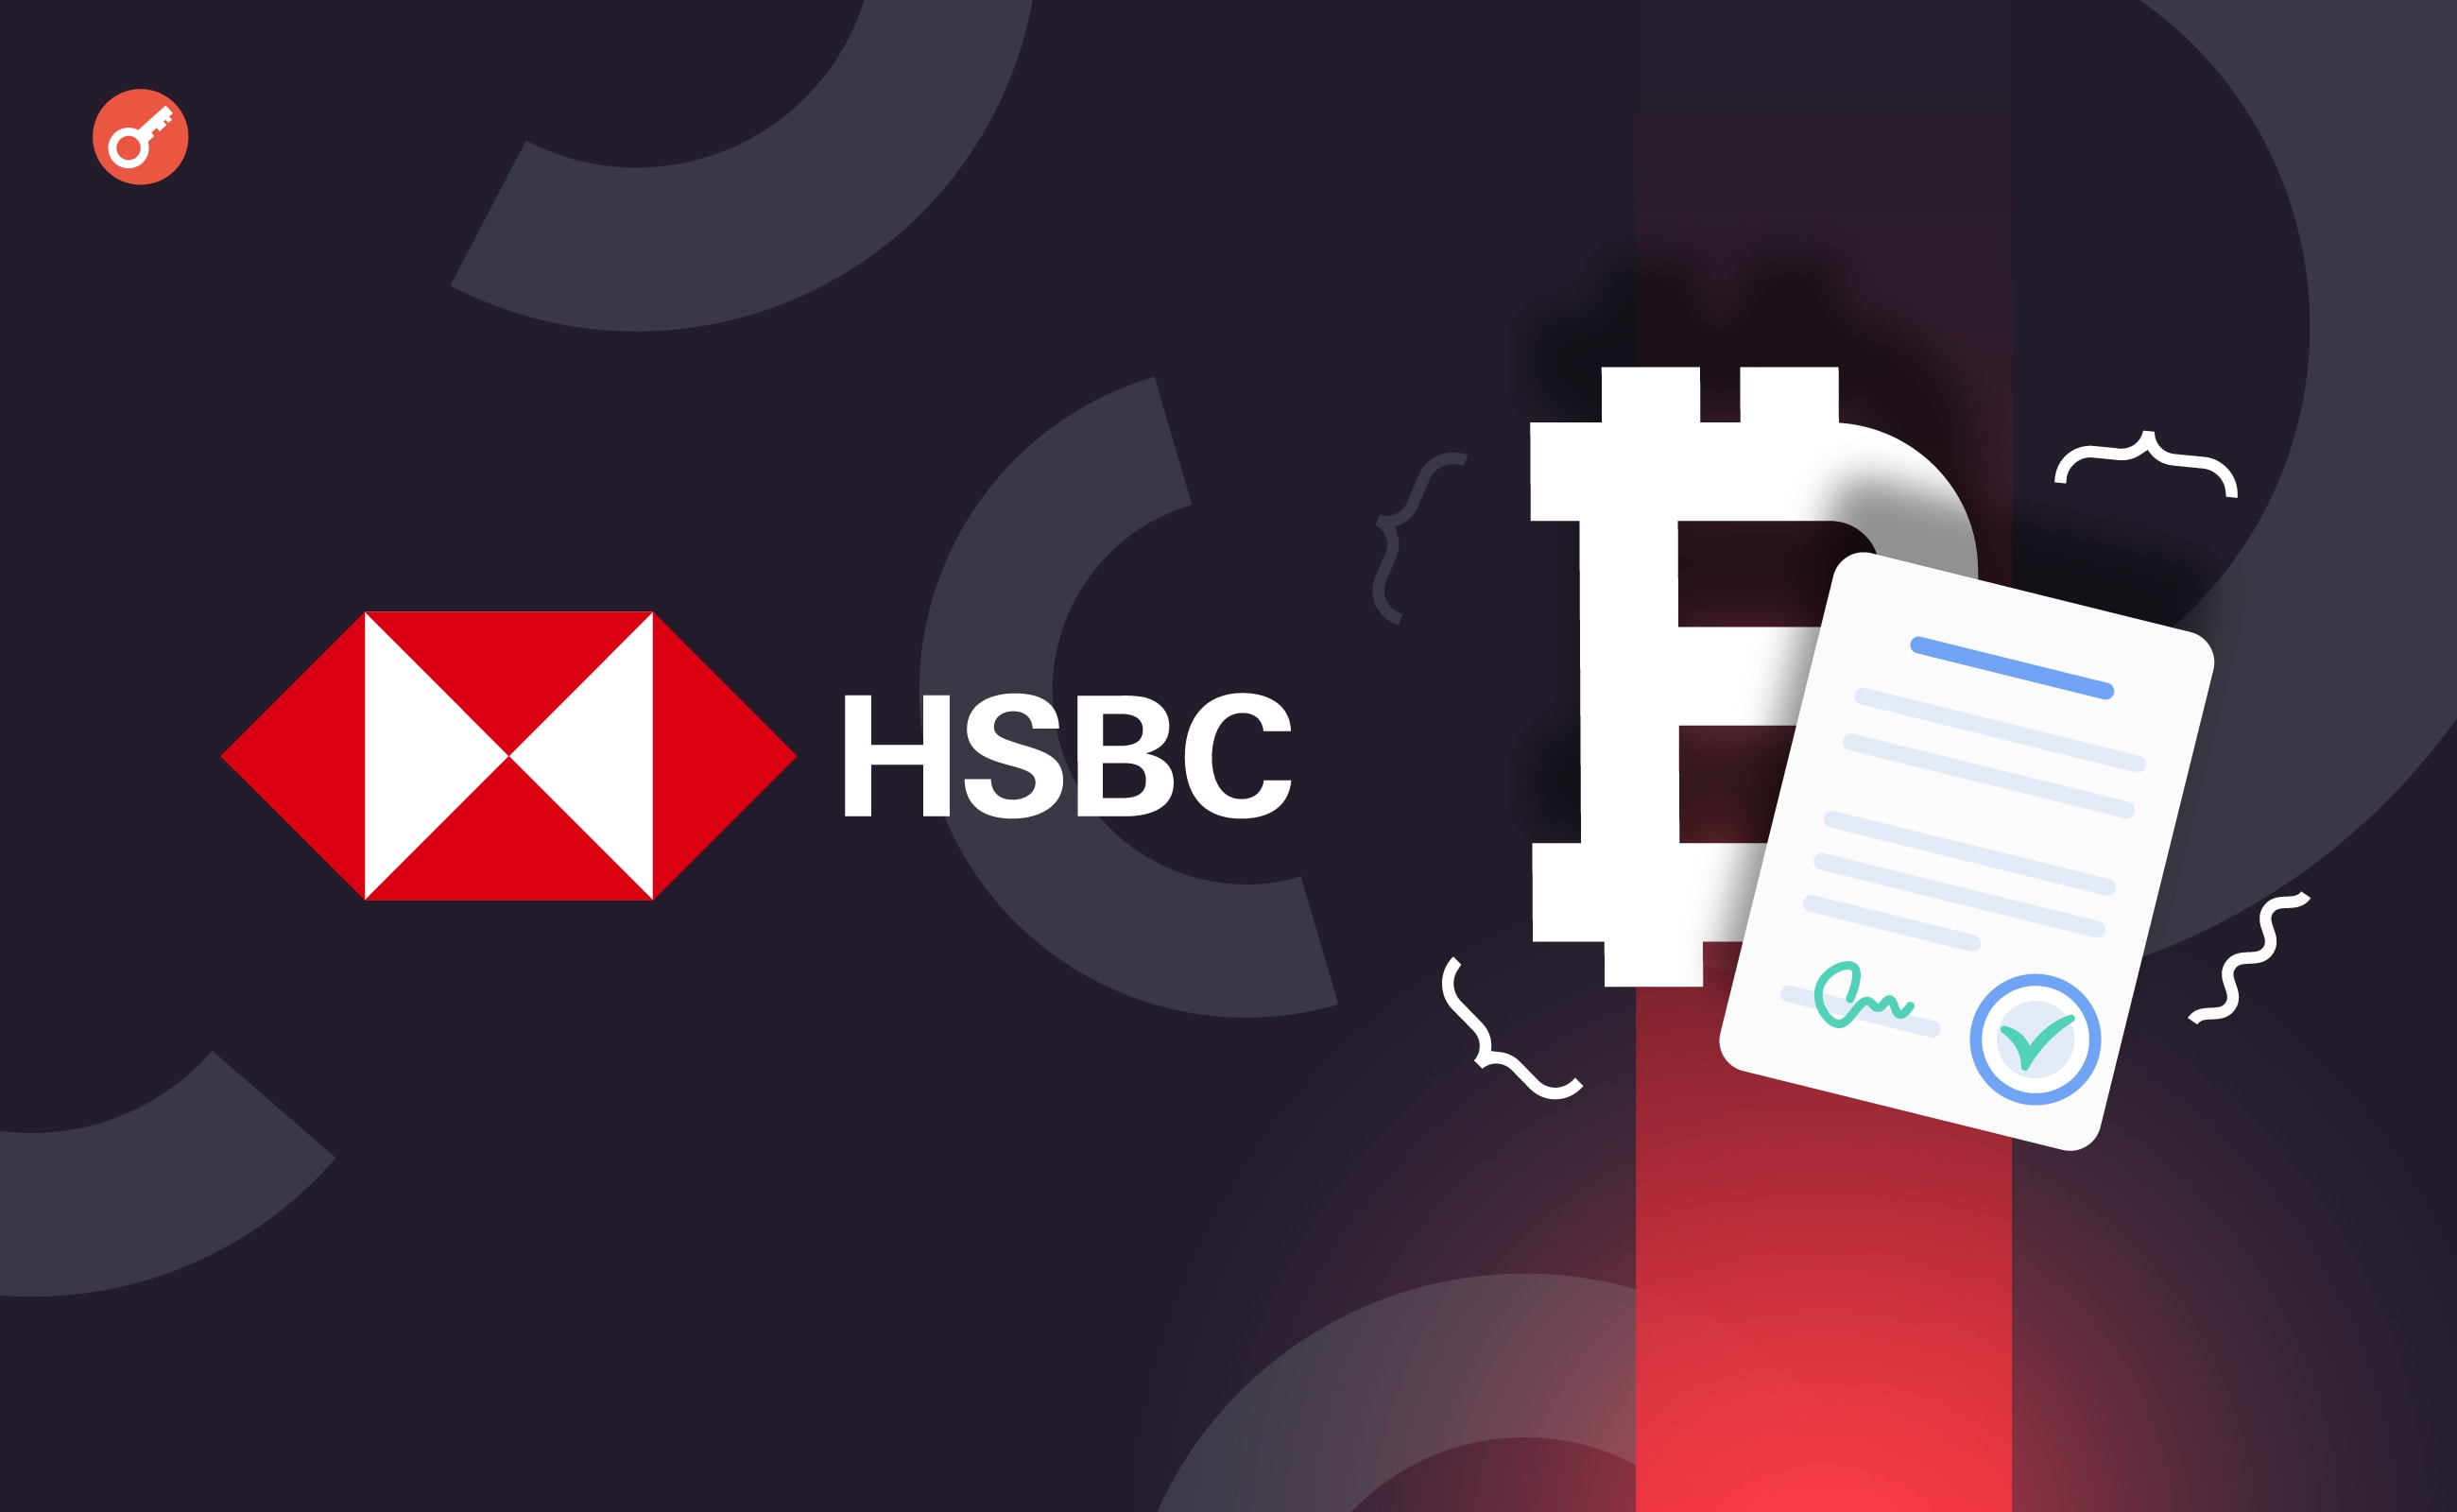 Банк HSBC додав криптоплатежі для погашення кредитів та іпотеки. Головний колаж новини.